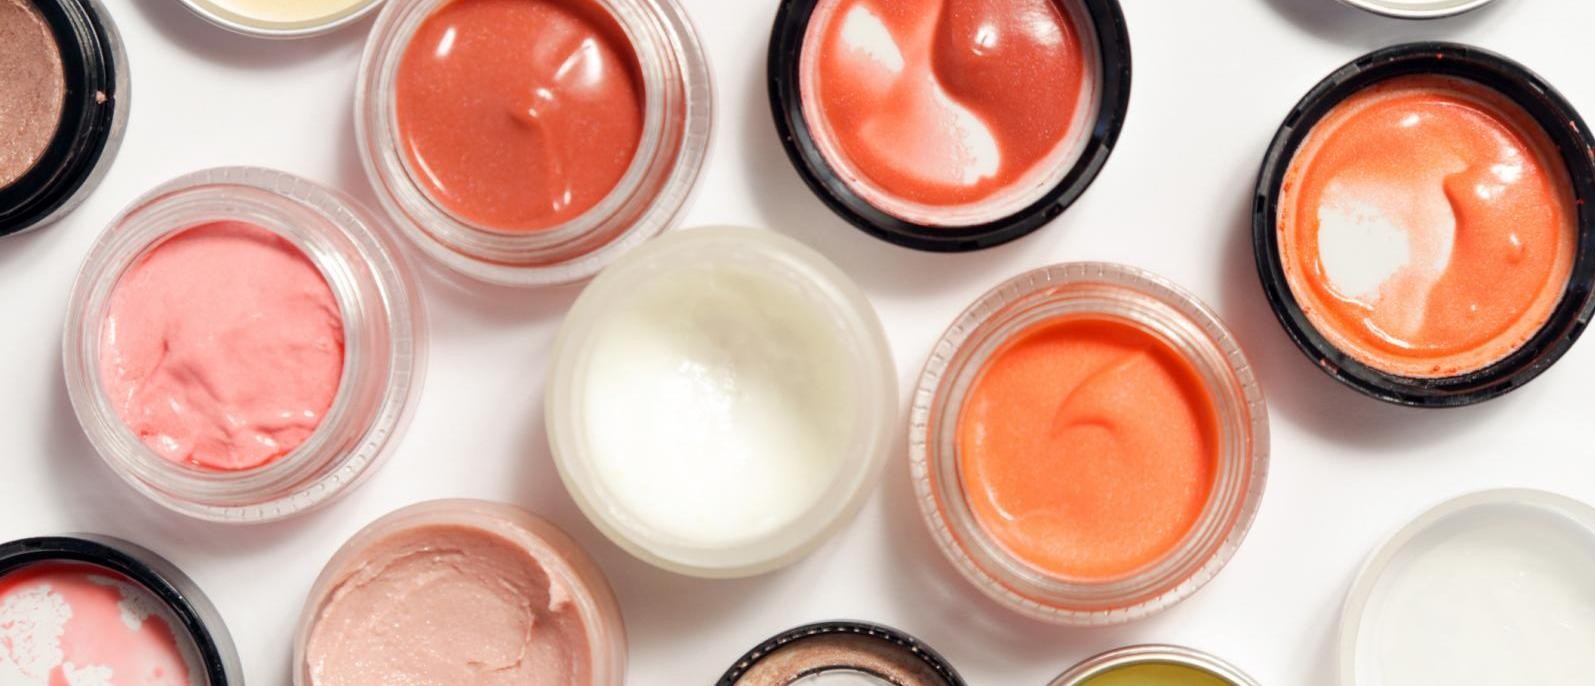 Creams and Cosmetics May Cause a Skin Rash